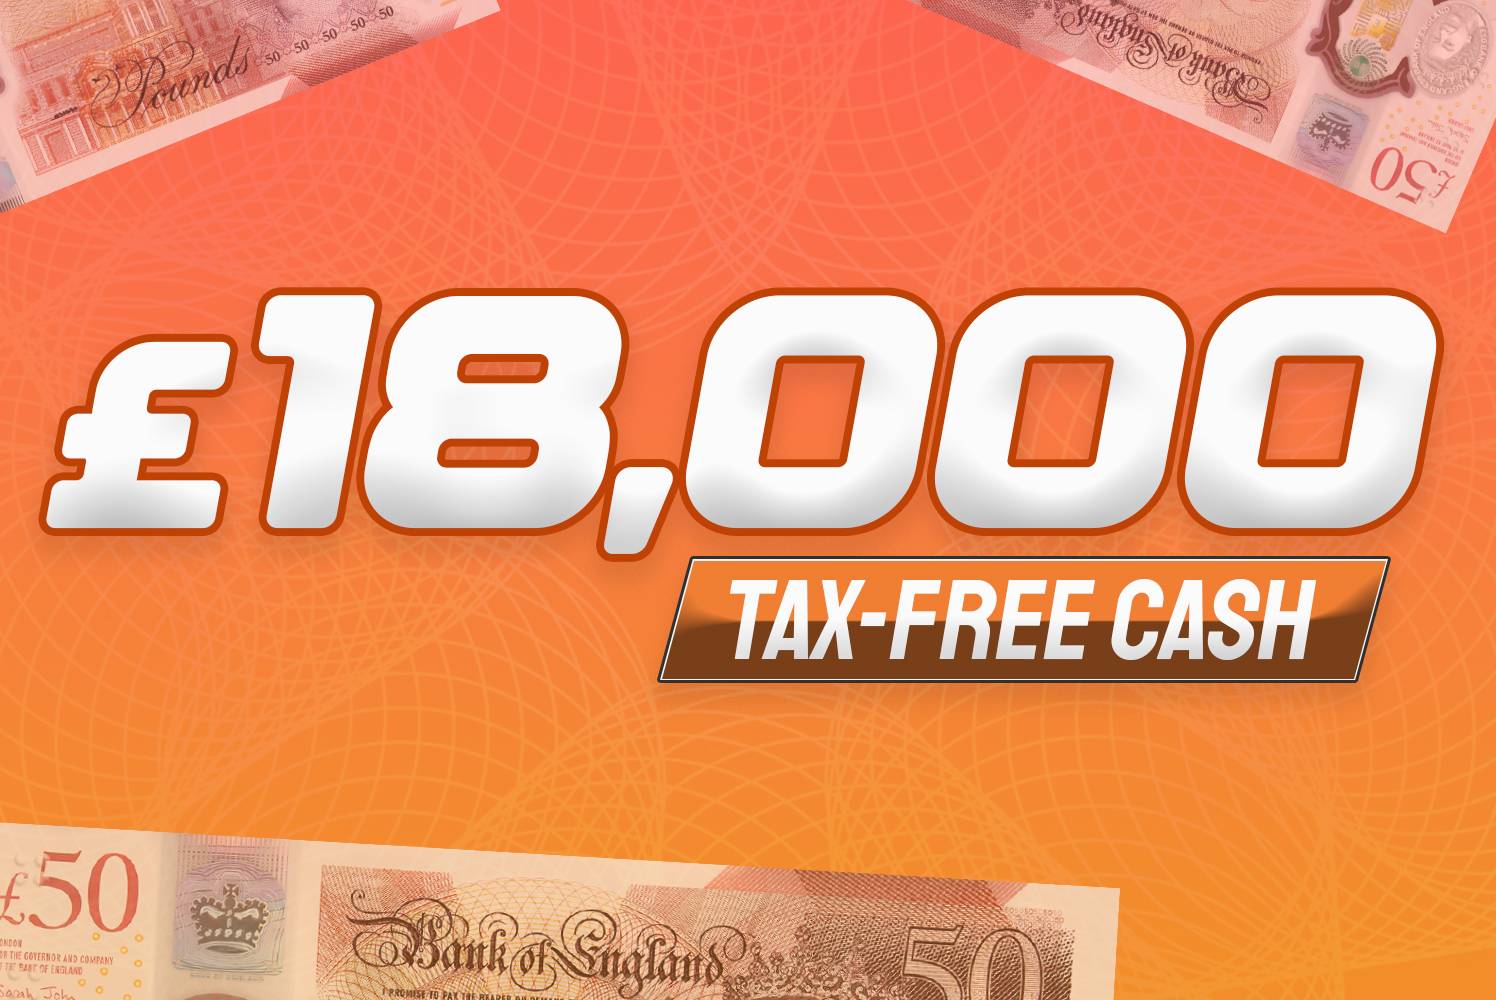 Win £18,000 Tax Free Cash